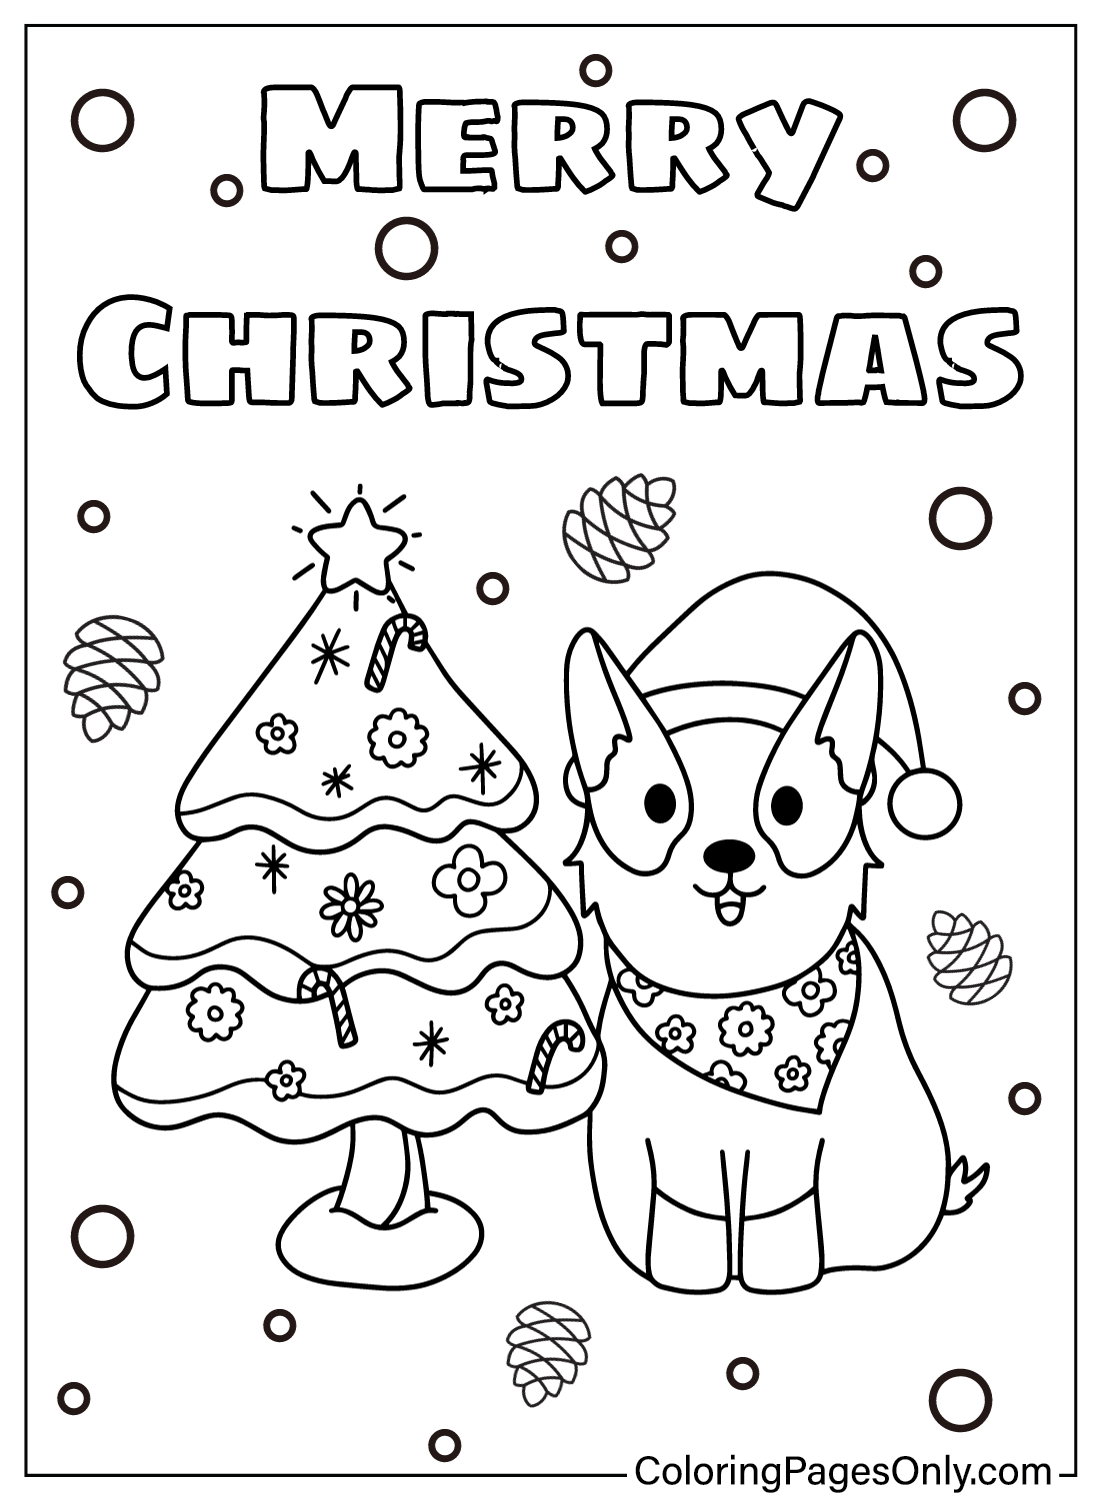 Weihnachts-Corgi mit Weihnachtsbaum-Färbung von Corgi